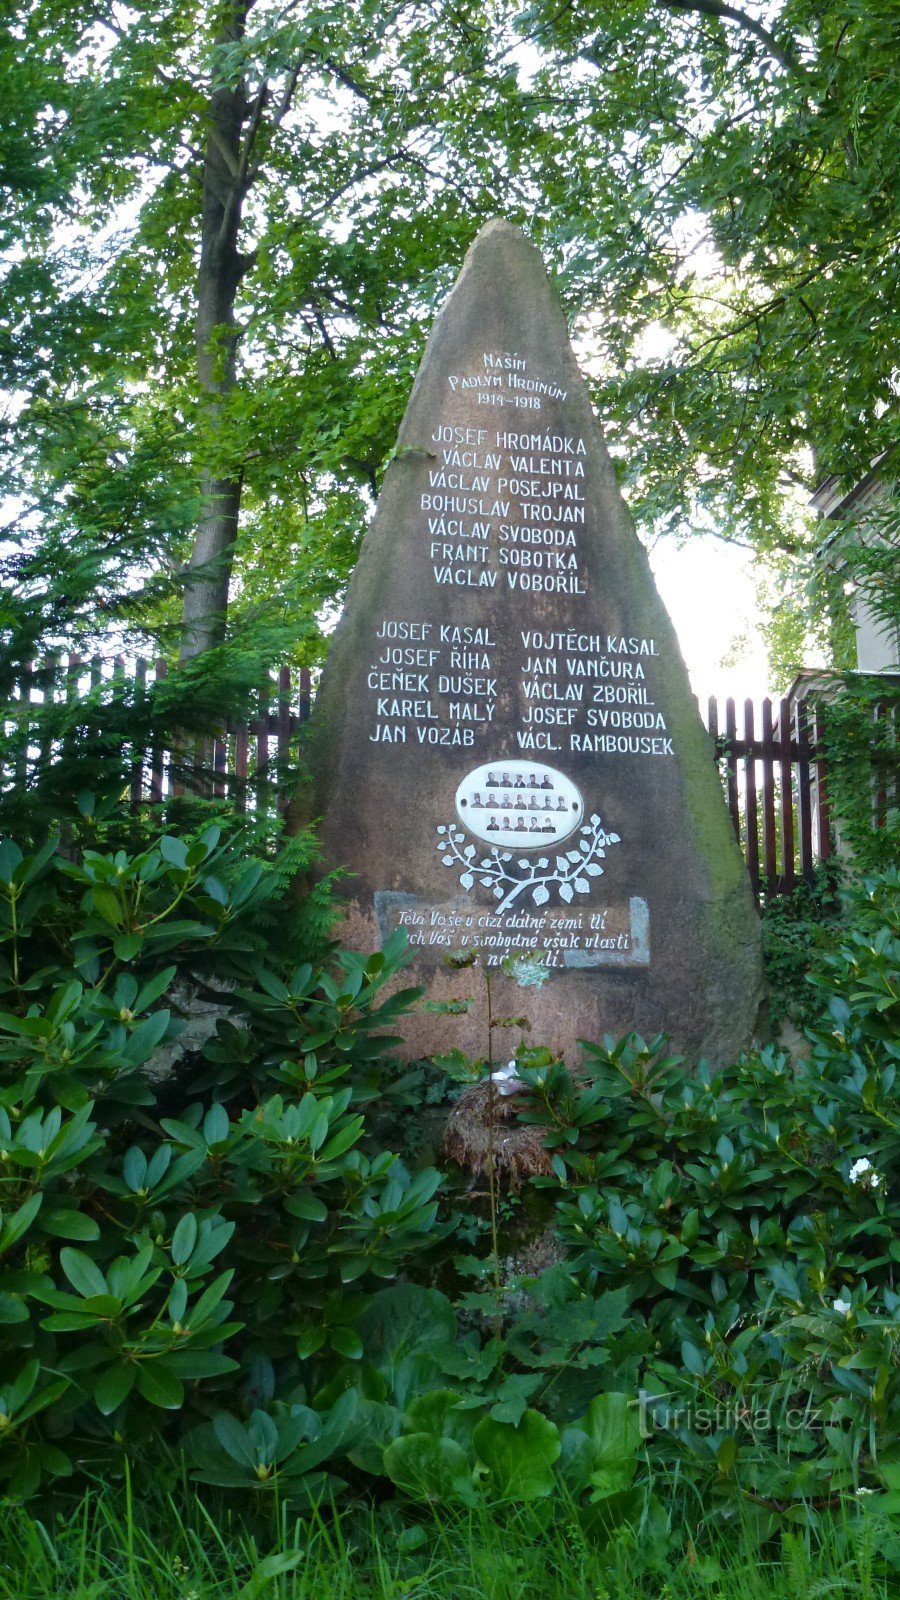 17 namen zijn gegraveerd in het monument